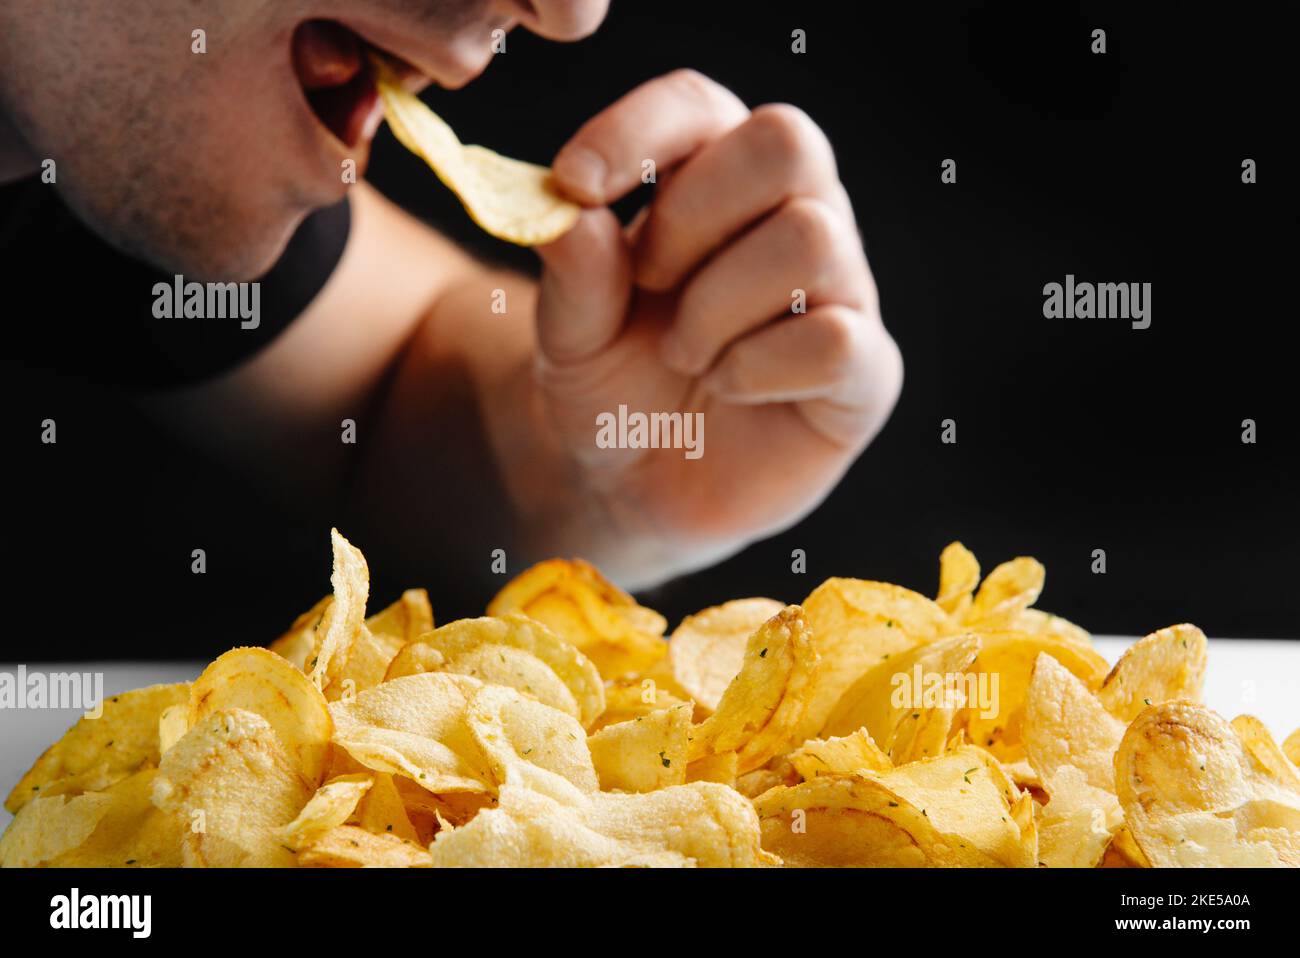 L'uomo sta mangiando cibo spazzatura, patatine su uno sfondo scuro. Cibo nocivo. Il cibo fritto è dannoso per la salute. Stile di vita sano, alimentazione corretta, divieto Foto Stock